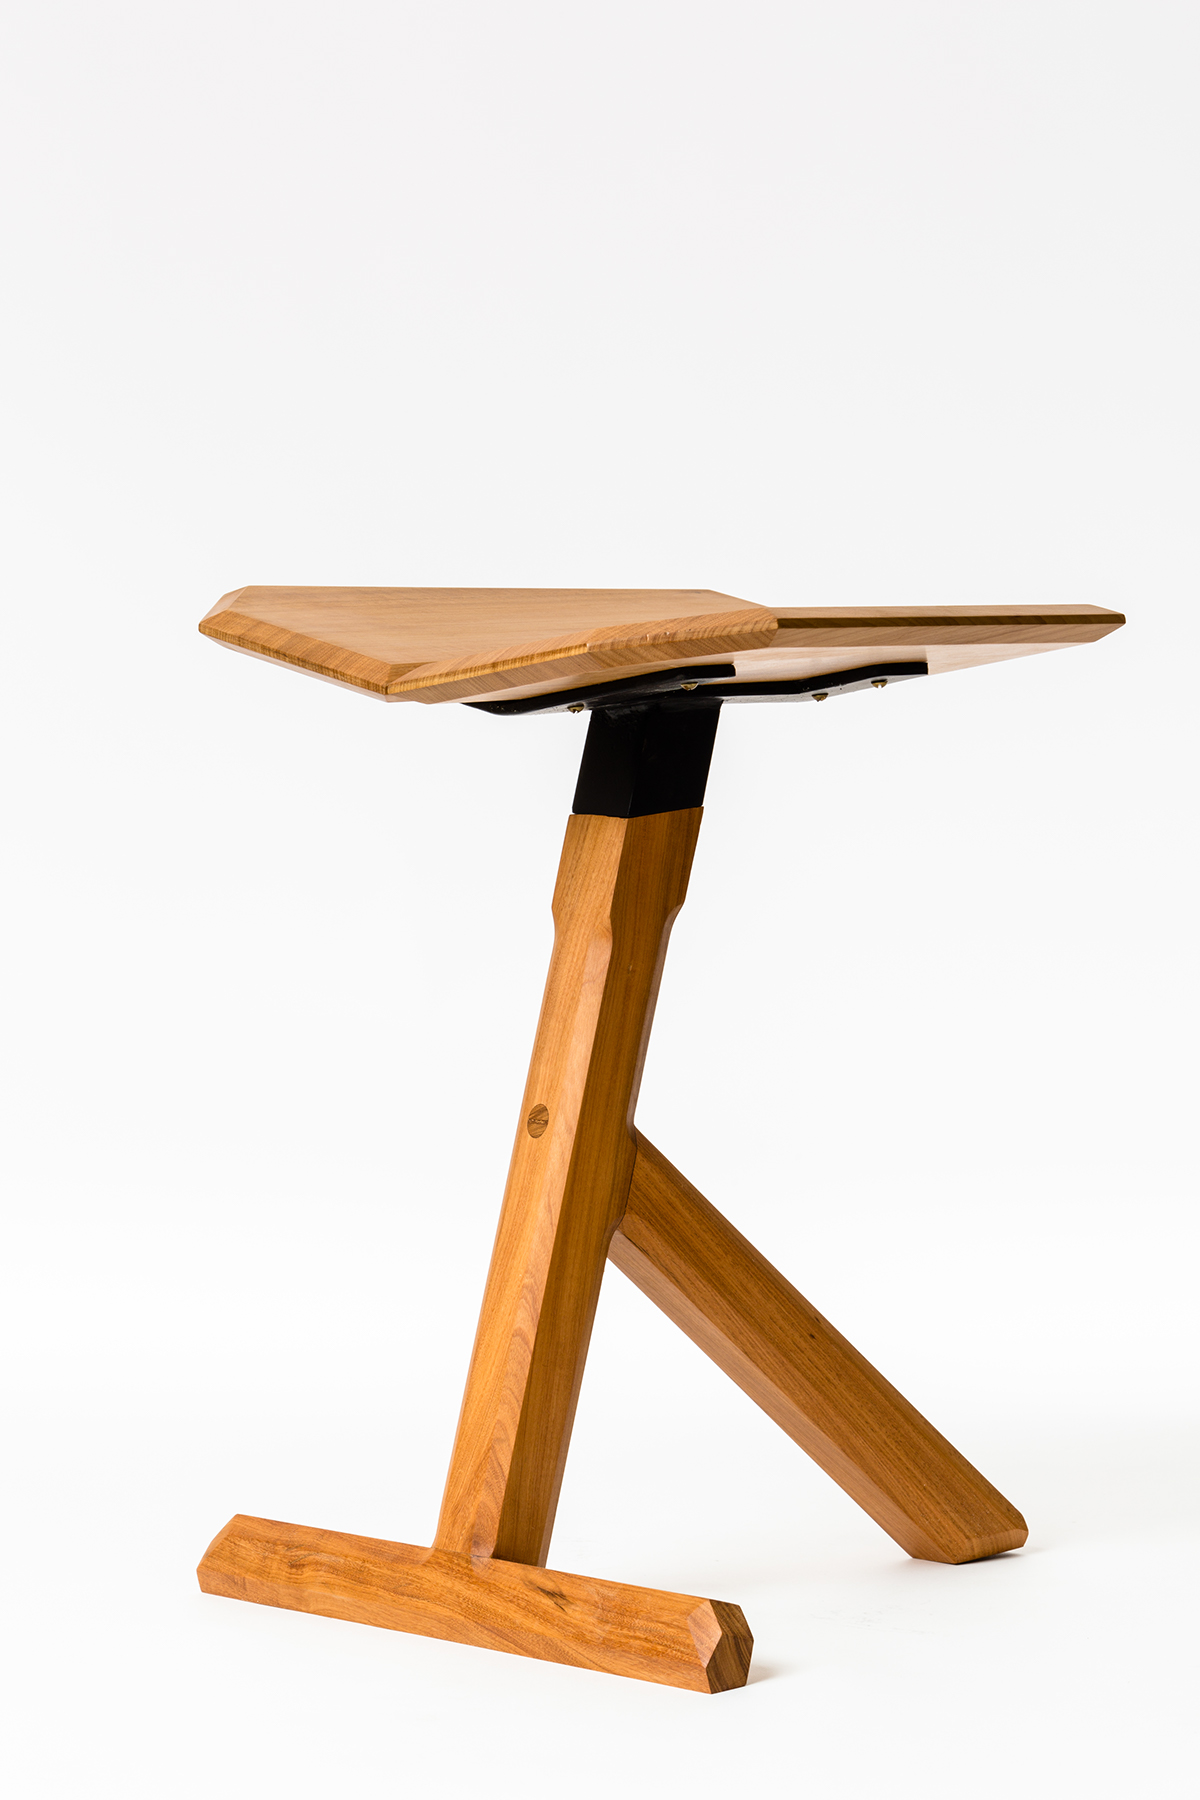 #wood #flyer #stool